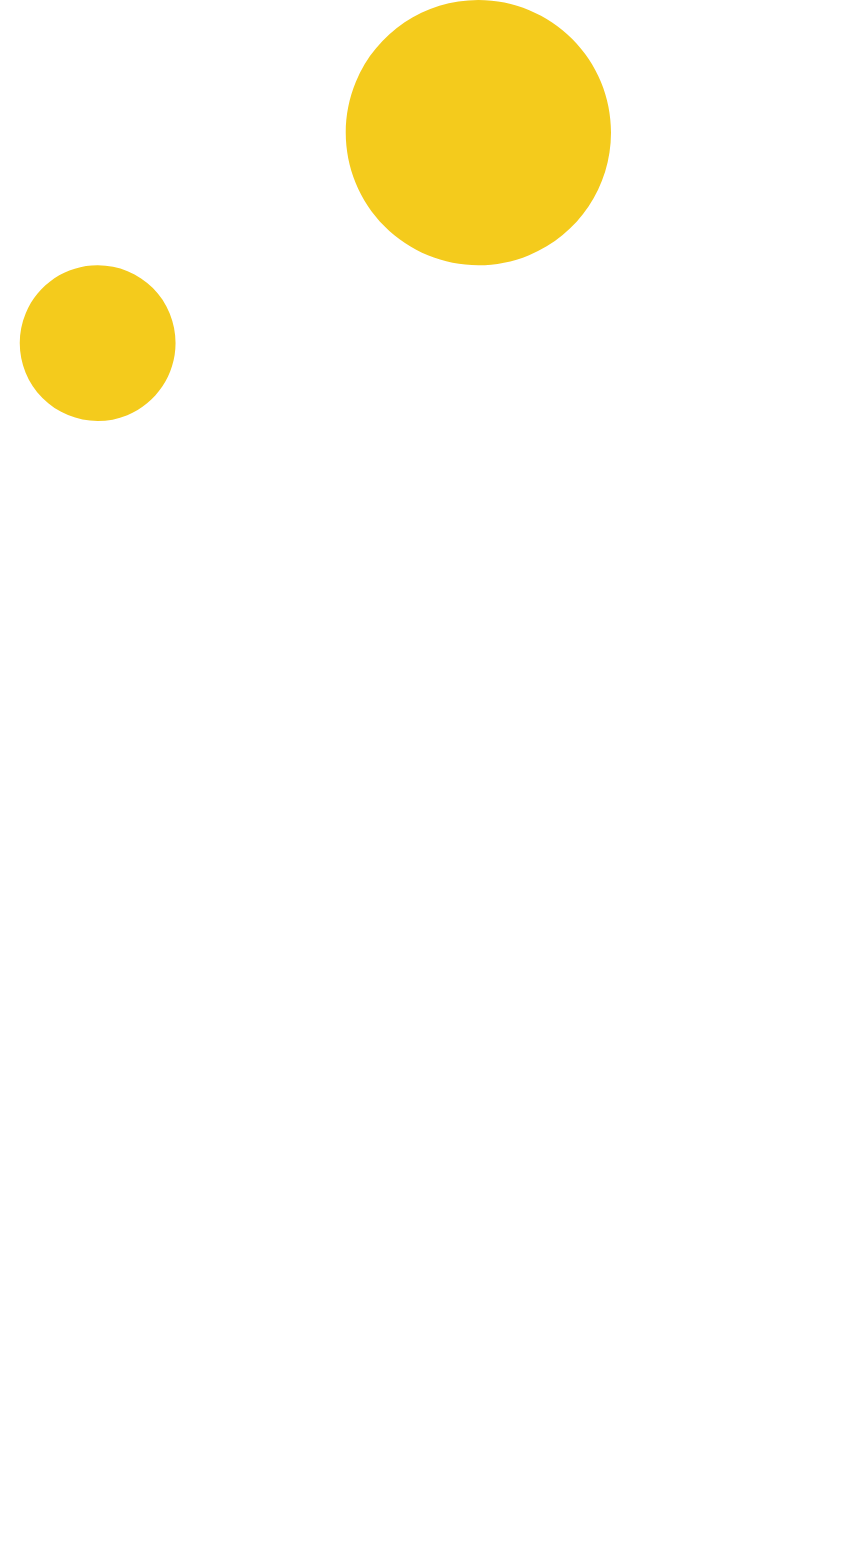 Carmila logo pour fonds sombres (PNG transparent)